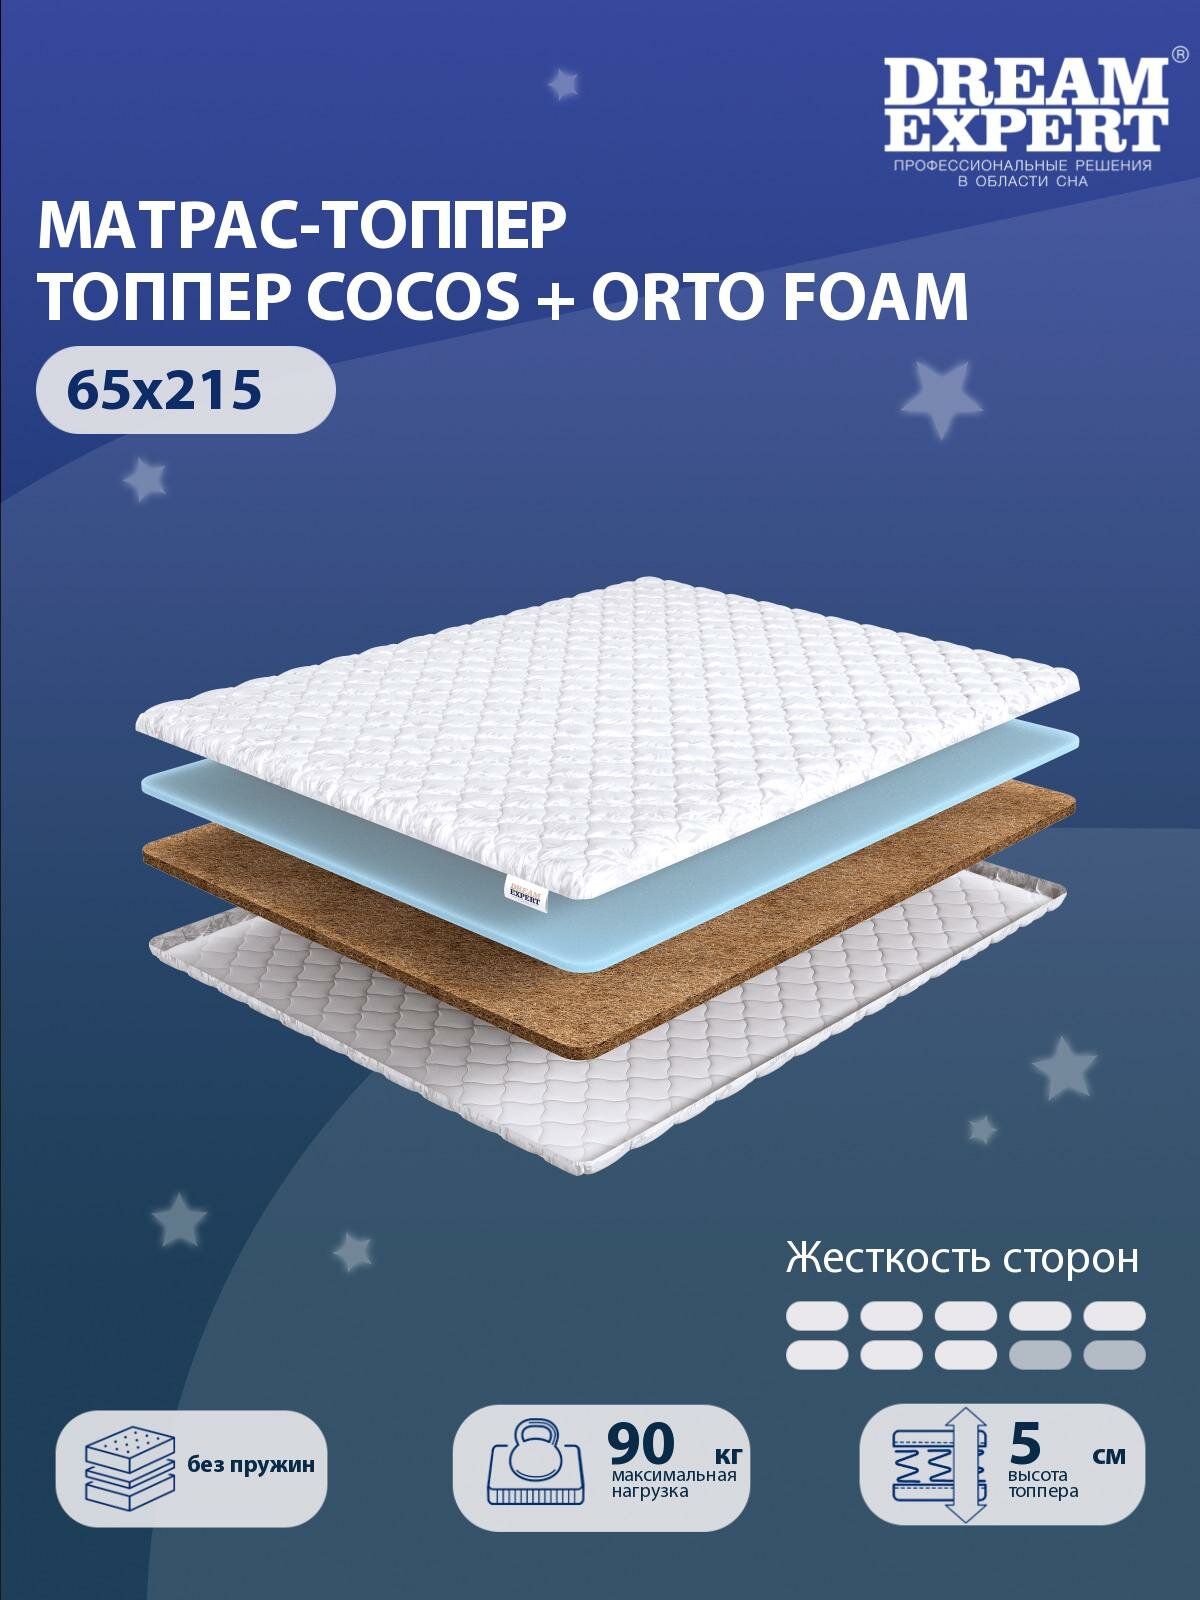 Матрас-топпер, Топпер-наматрасник DreamExpert Cocos + Orto Foam тонкий матрас, на резинке, Беспружинный, хлопковый, на кровать 65x215